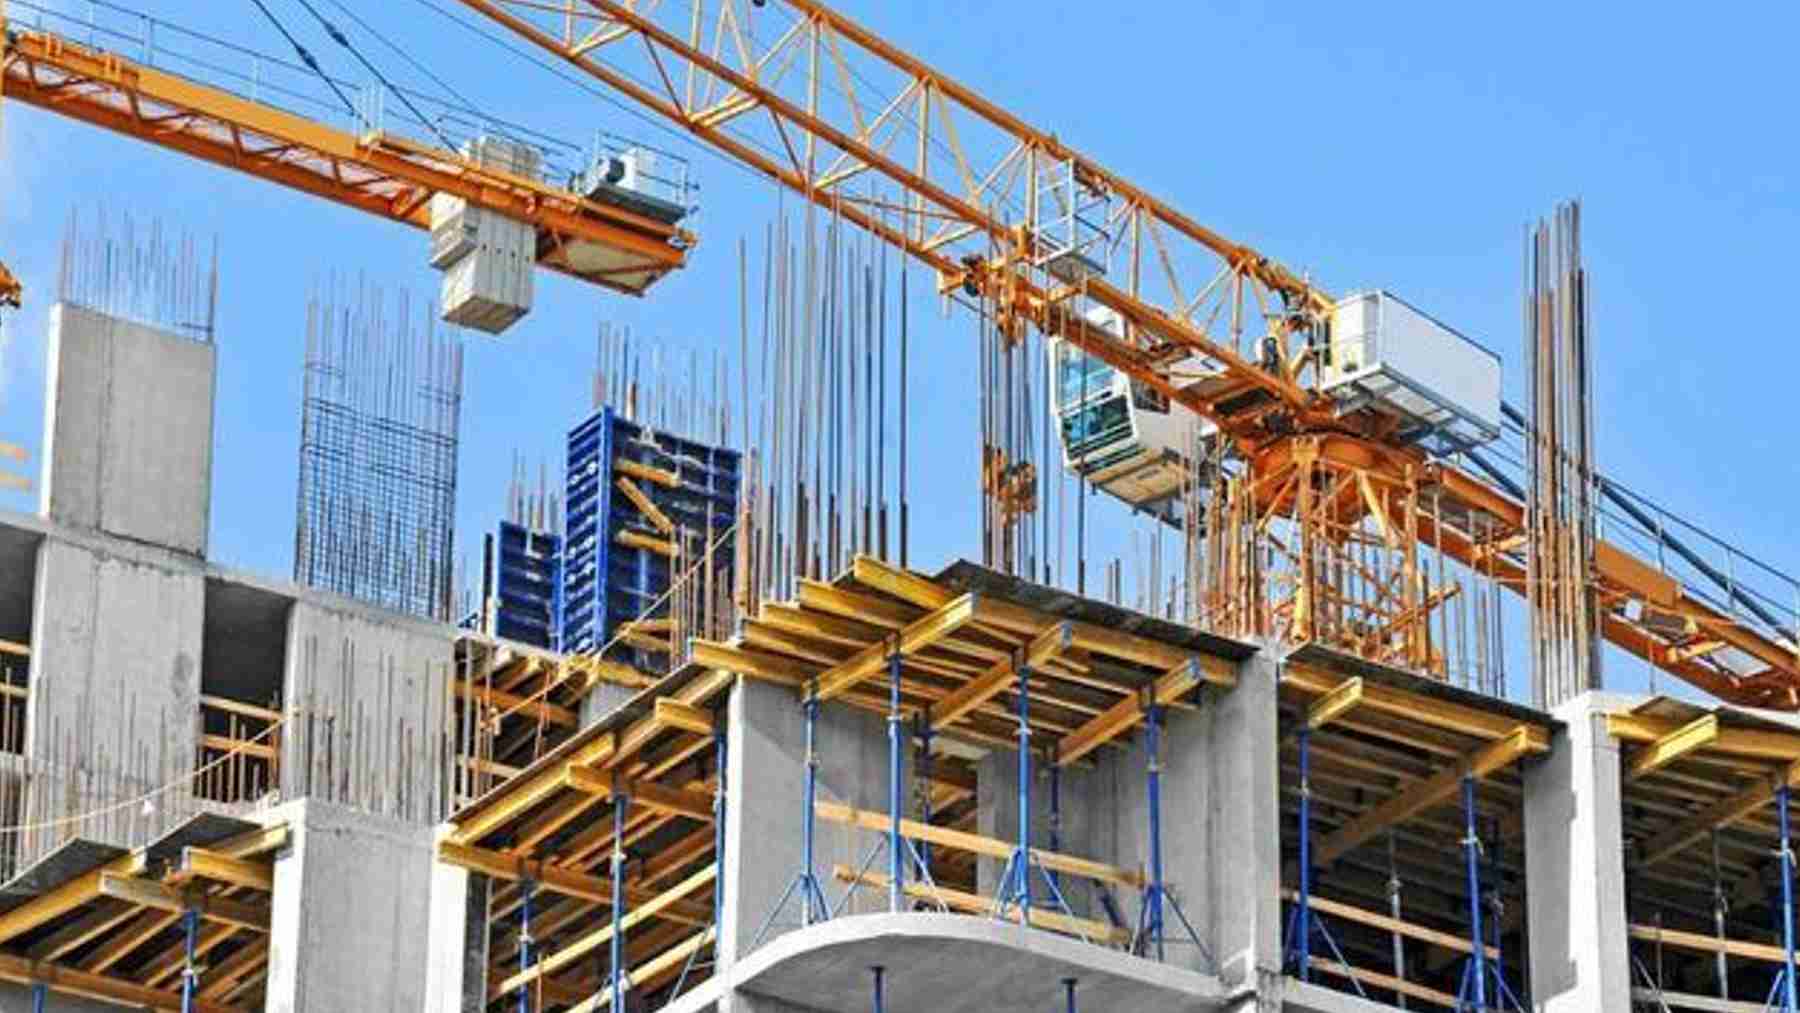 La crisis de suministros no frena el empleo en el sector de la construcción: aumenta un 4,2% en 2021